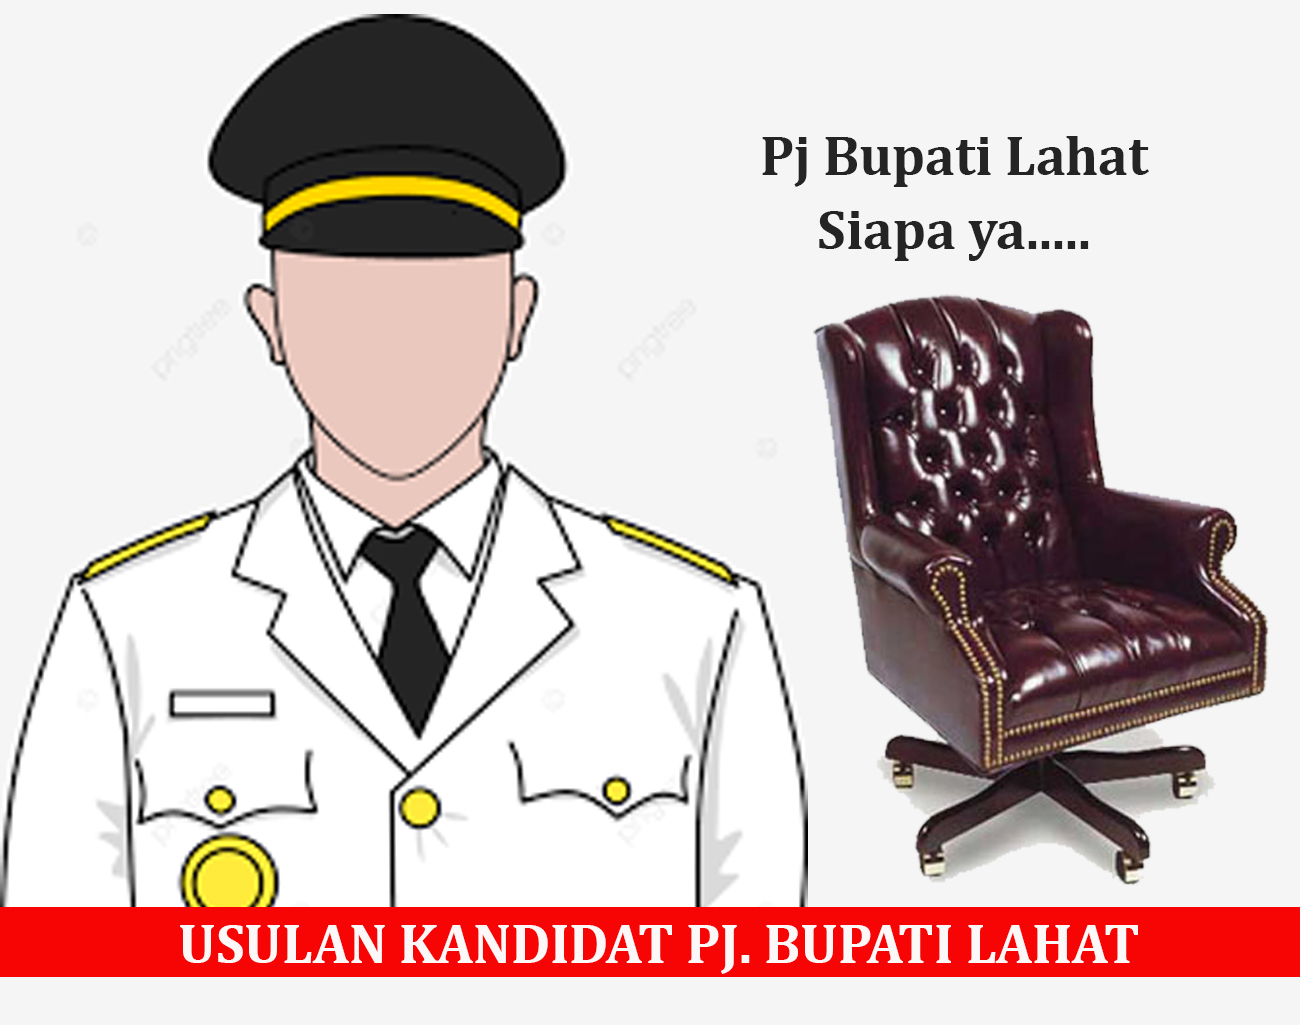 Jumlah Usulan Kandidat Pj Bupati Lahat Bisa 9 Nama Sampai Meja Menteri Dalam Negeri (Mendagri)